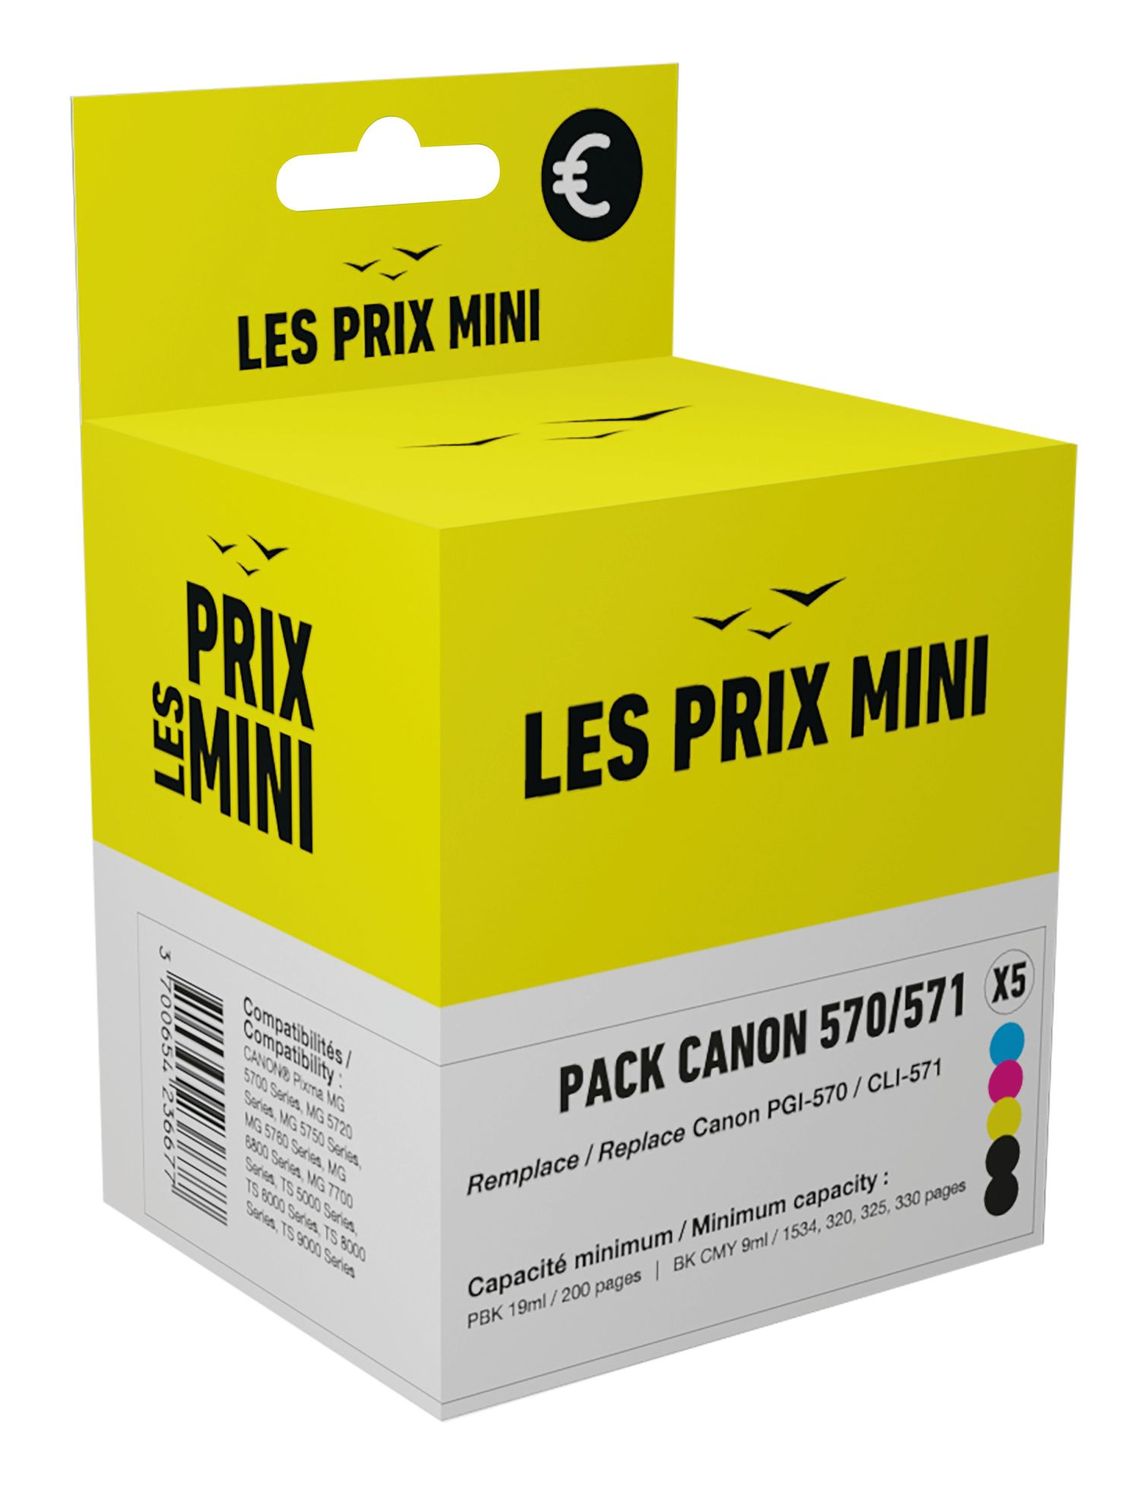 5 cartouches compatibles Canon PGI-570 CLI-571 - www.